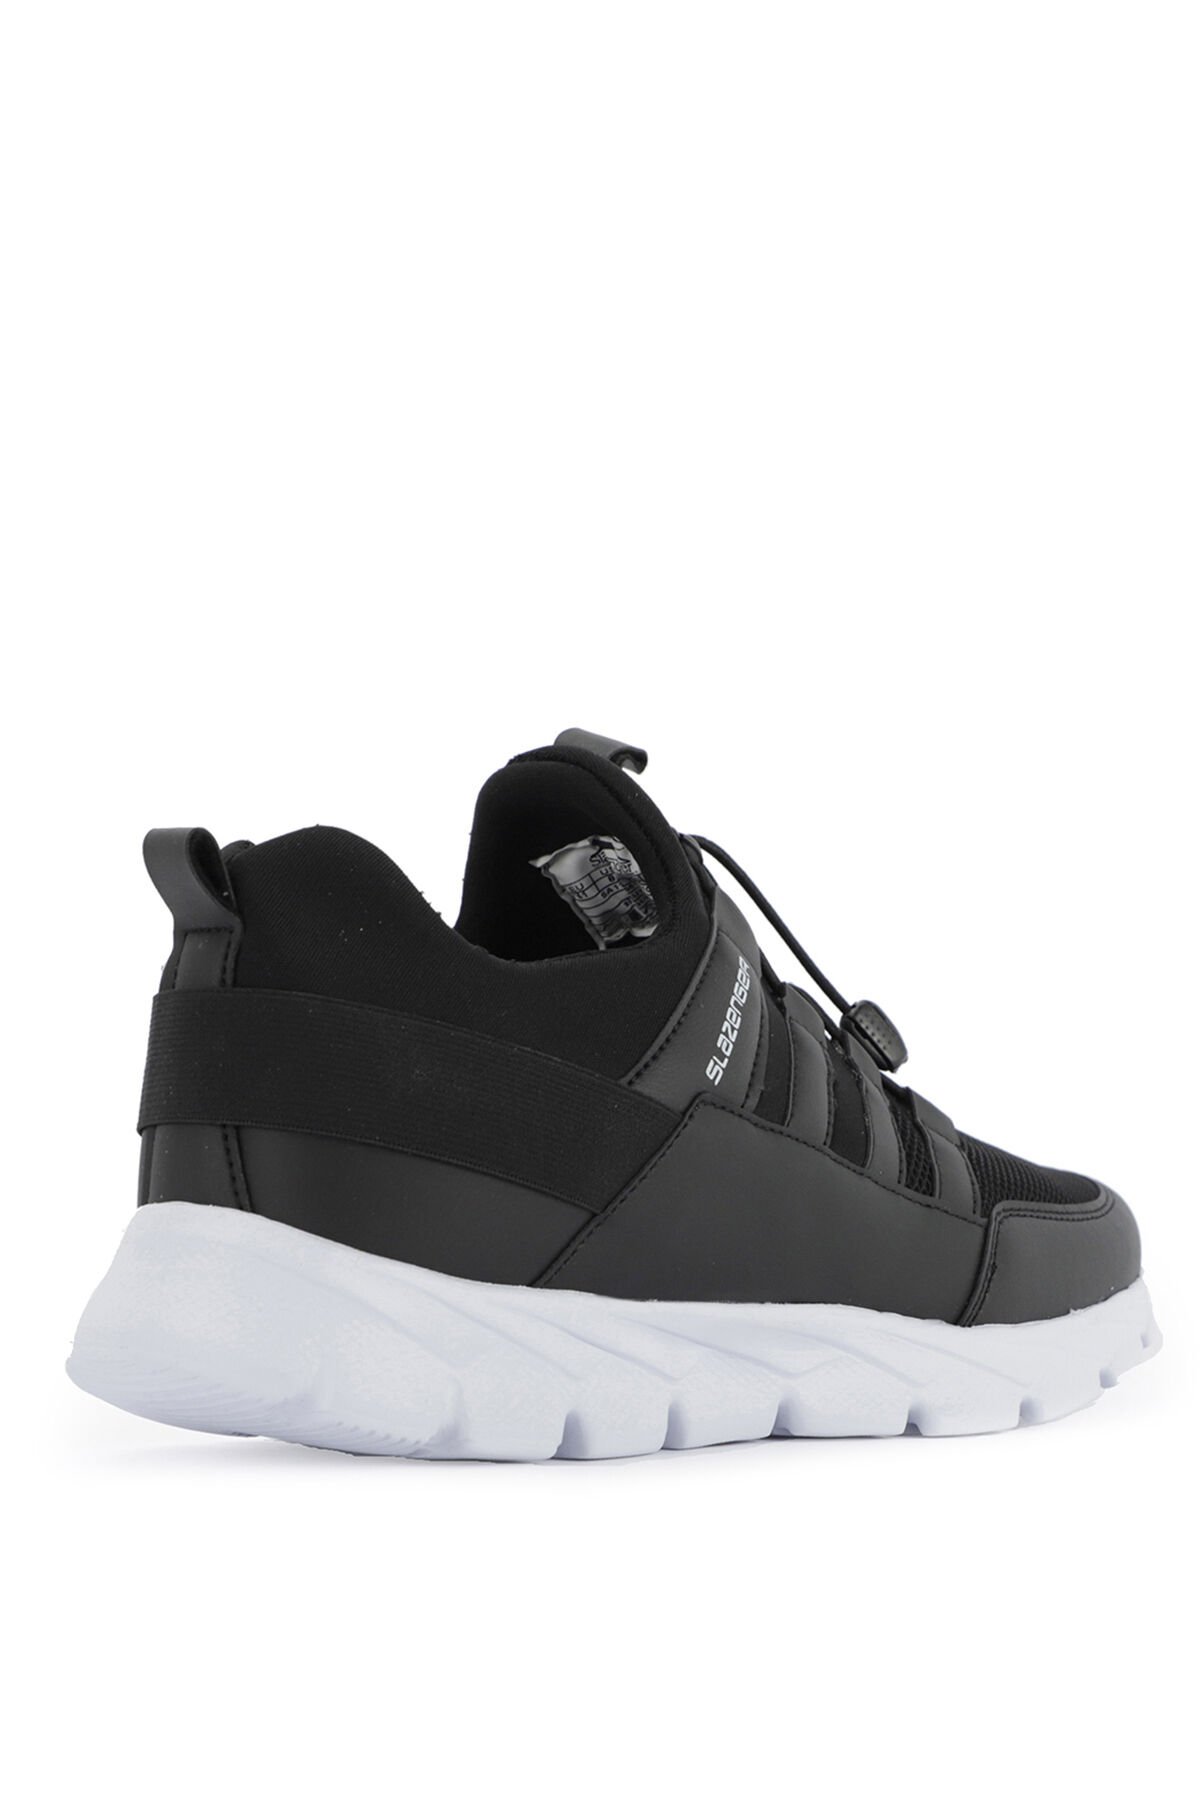 Slazenger KRUSER Sneaker Erkek Ayakkabı Siyah / Beyaz - Thumbnail